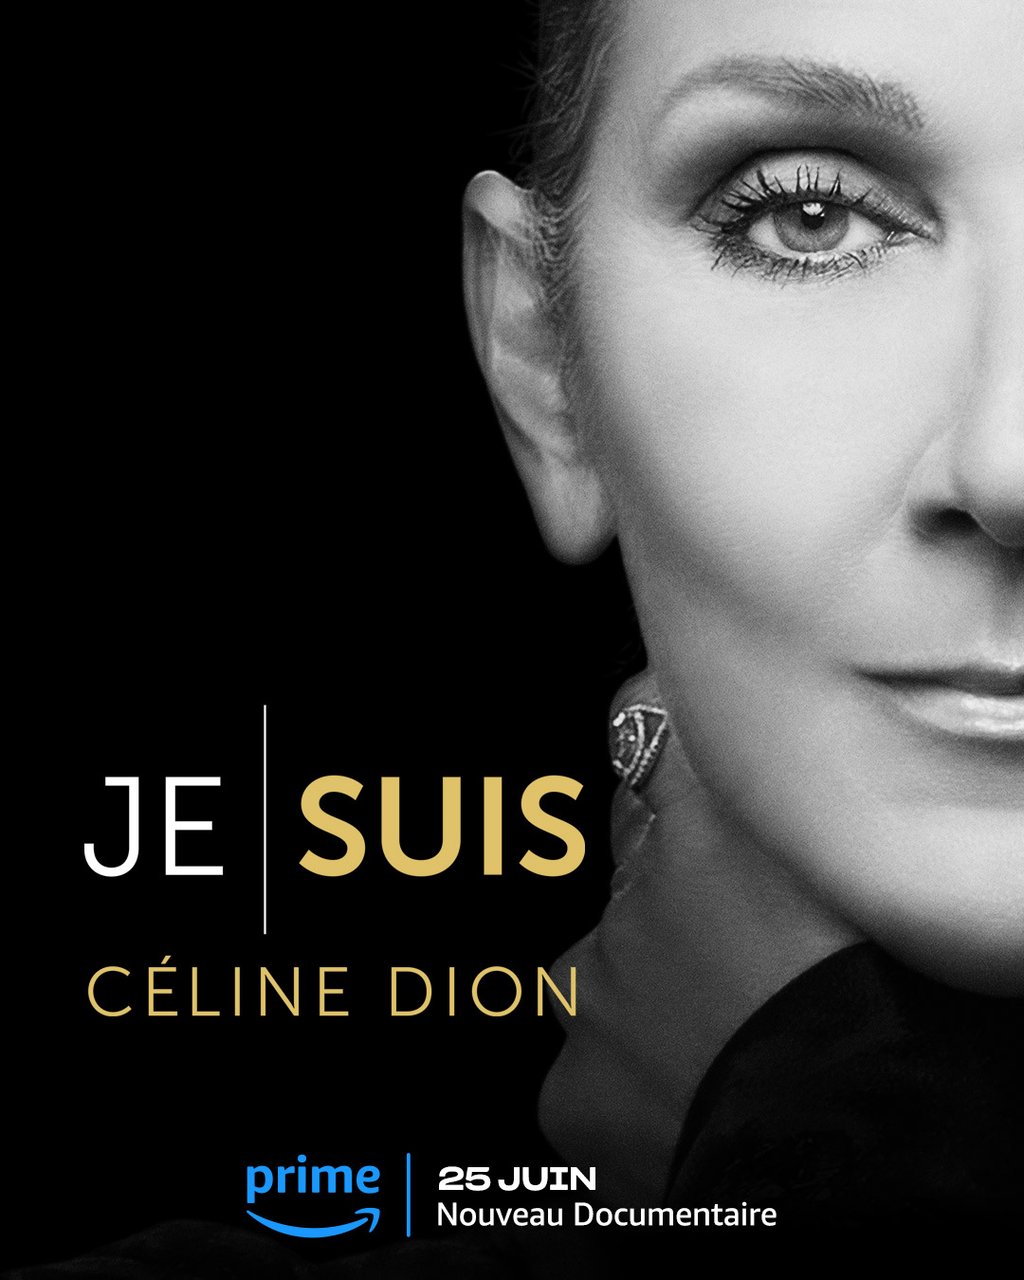 Céline Dion brille sur le tapis rouge, mais c’est plutôt le look de René-Charles qui vole la vedette